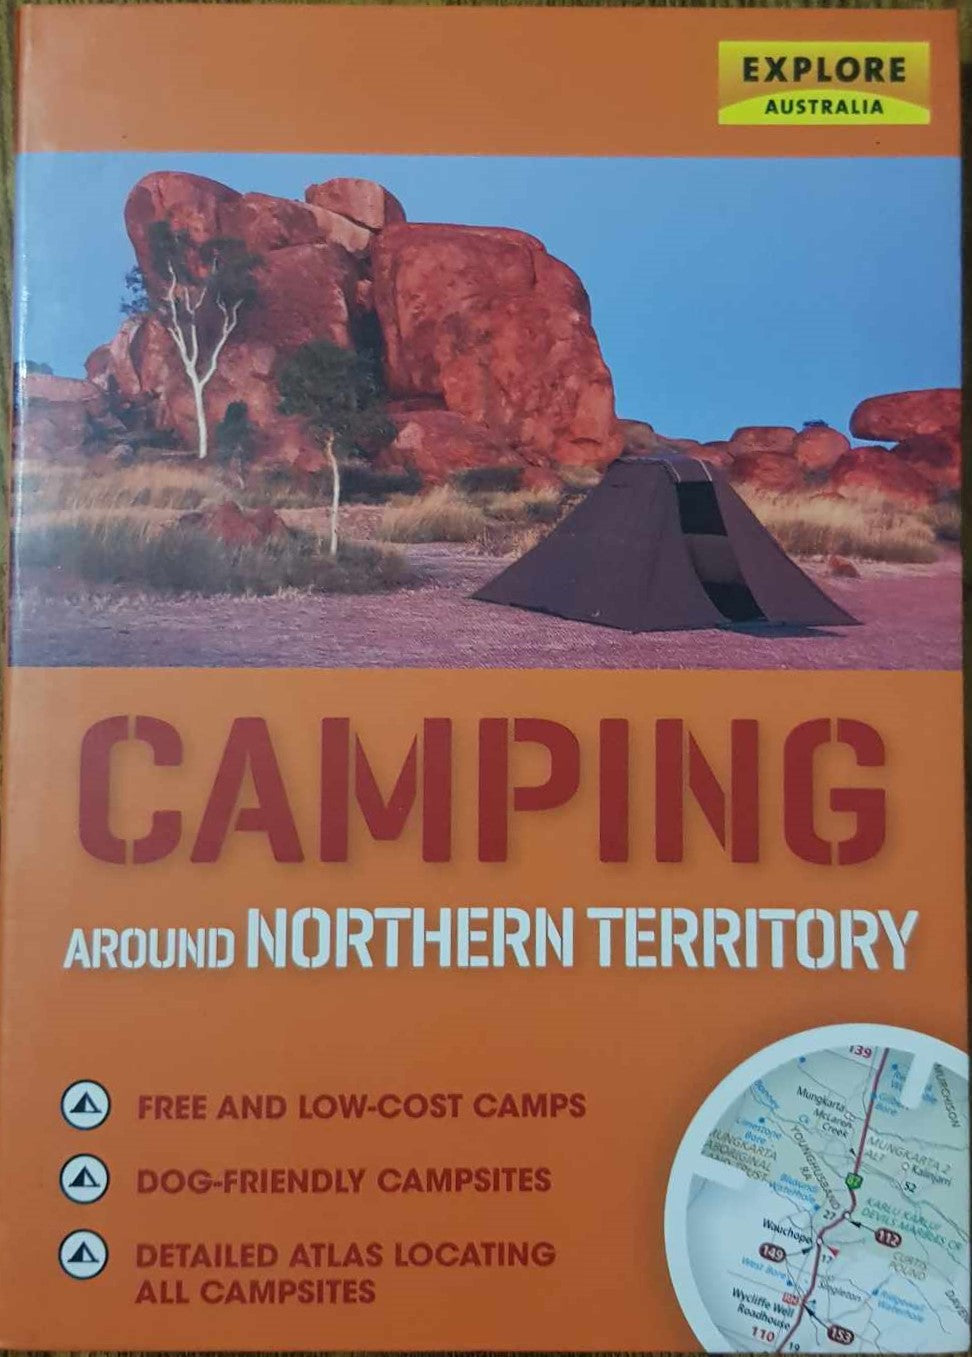 Camping around Northern Territory